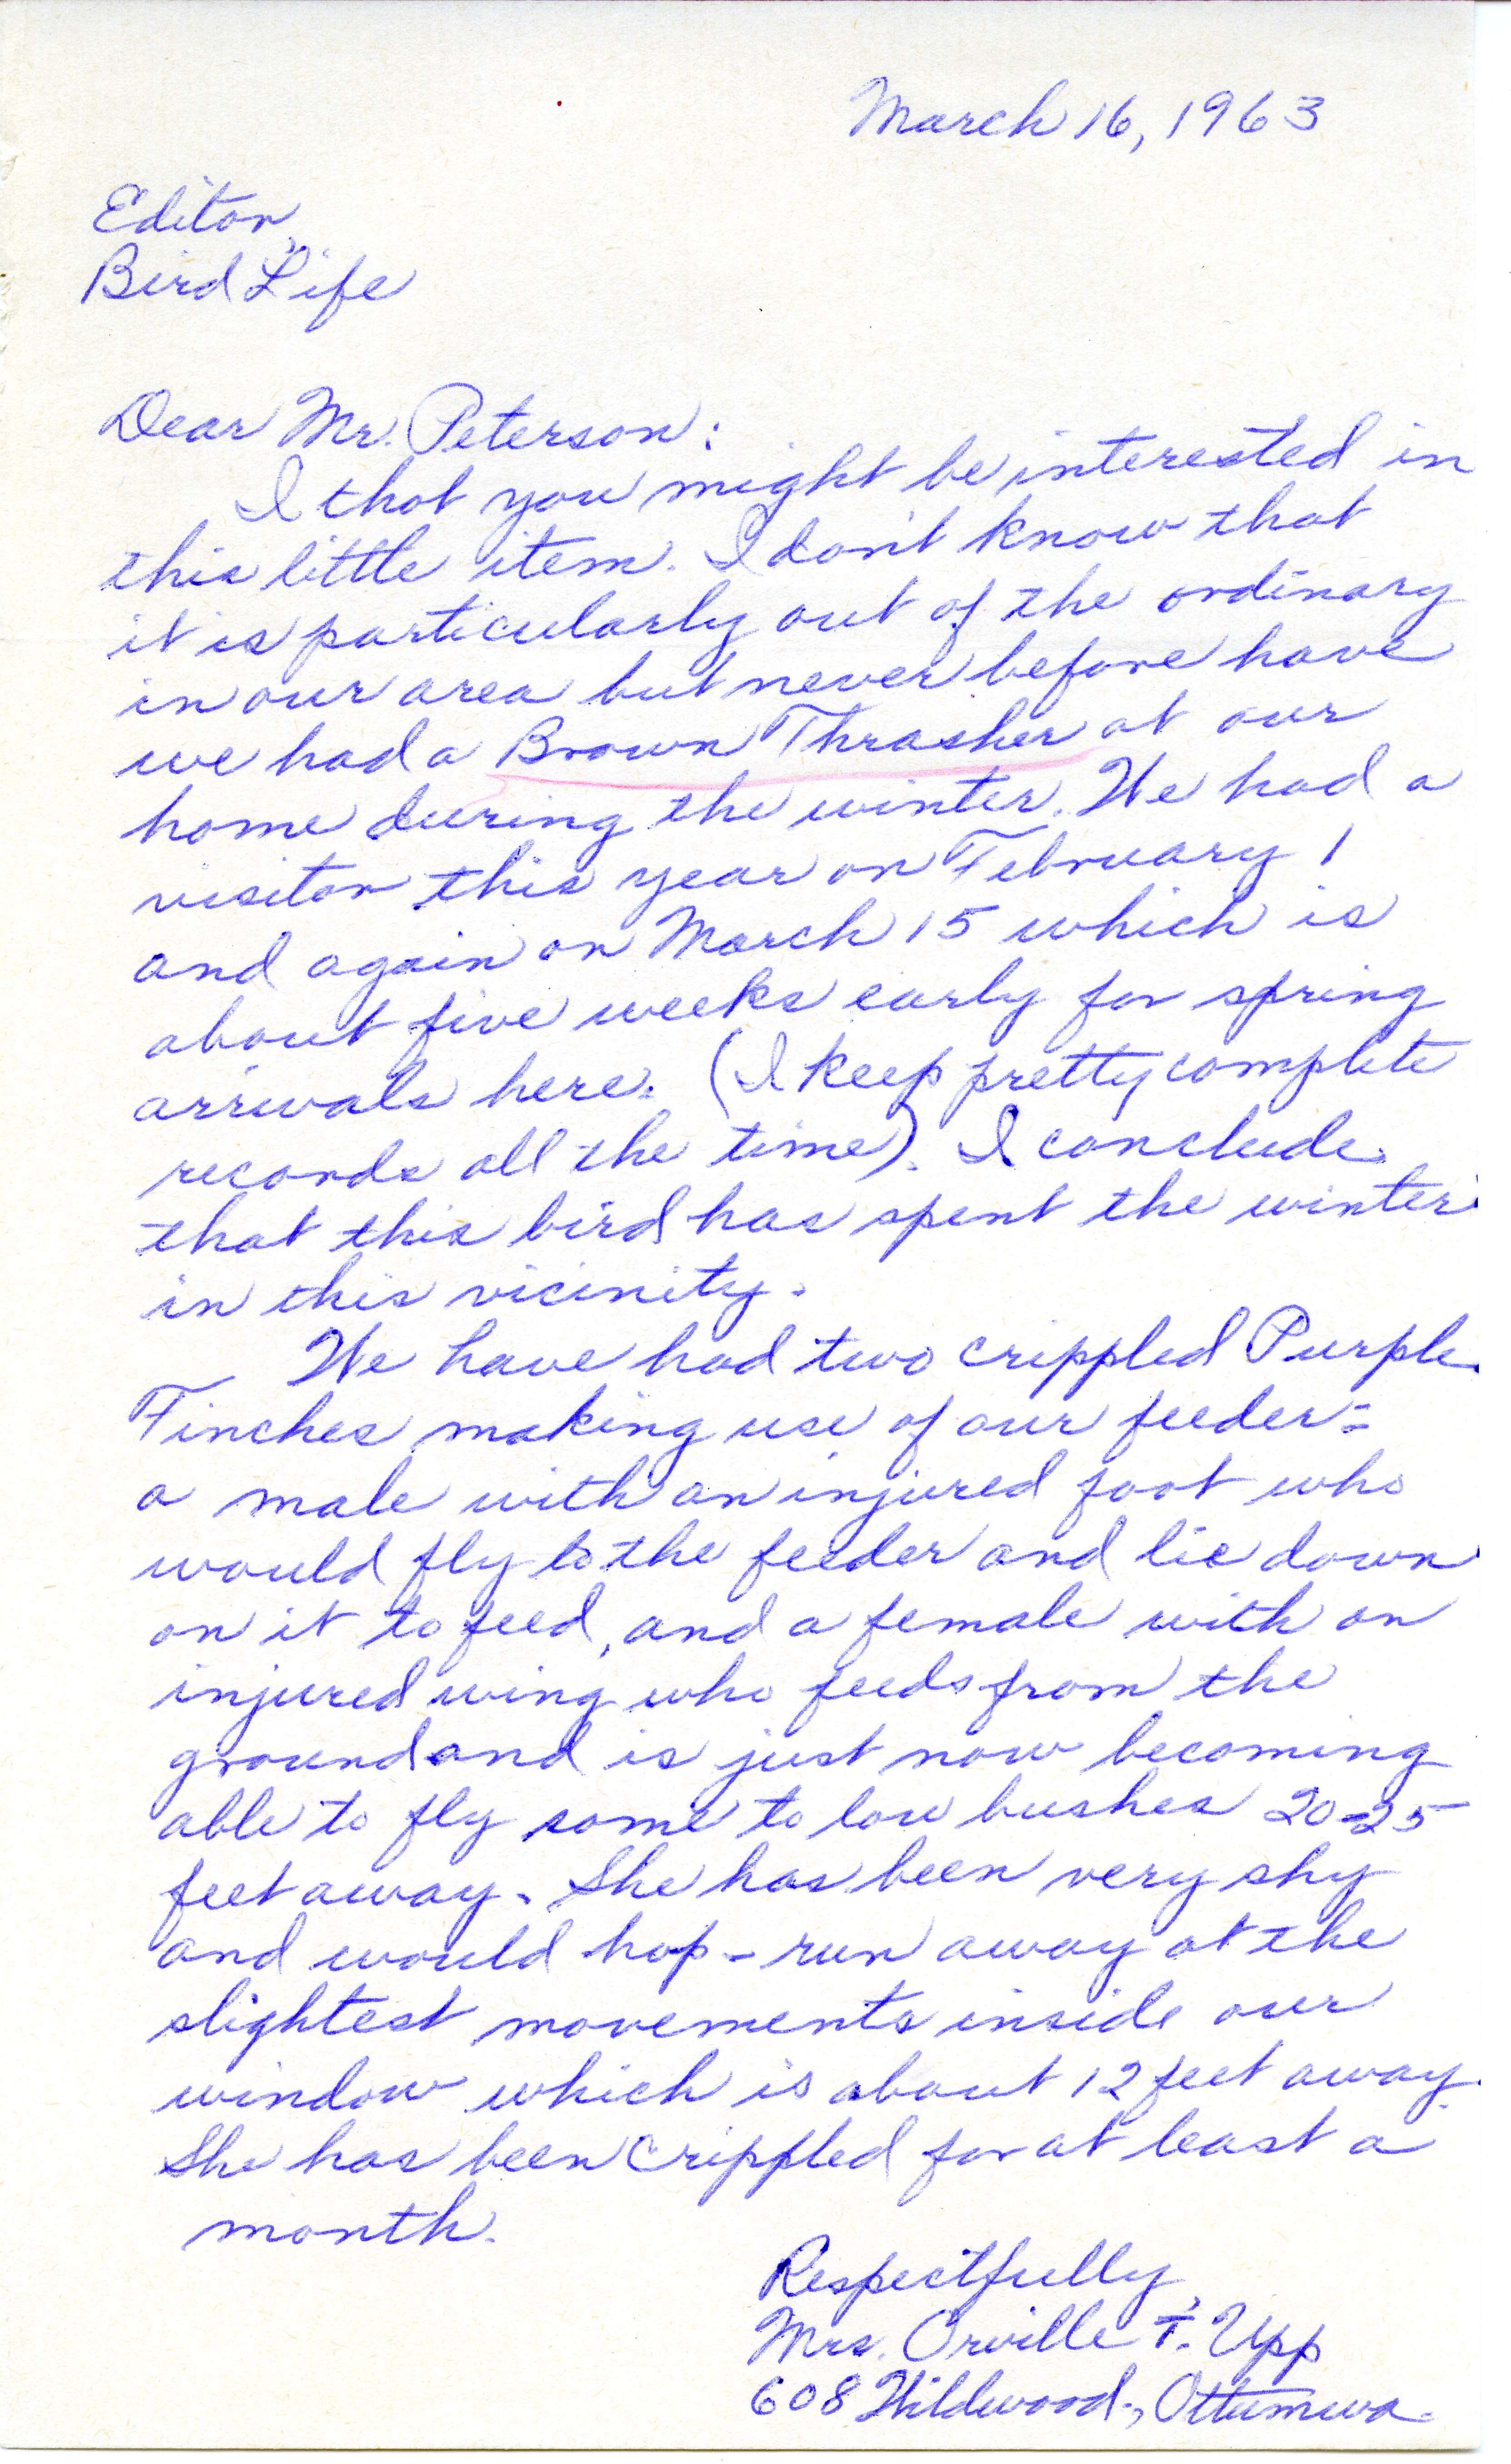 Ruth Upp letter to Peter C. Petersen regarding bird sightings, March 16, 1963